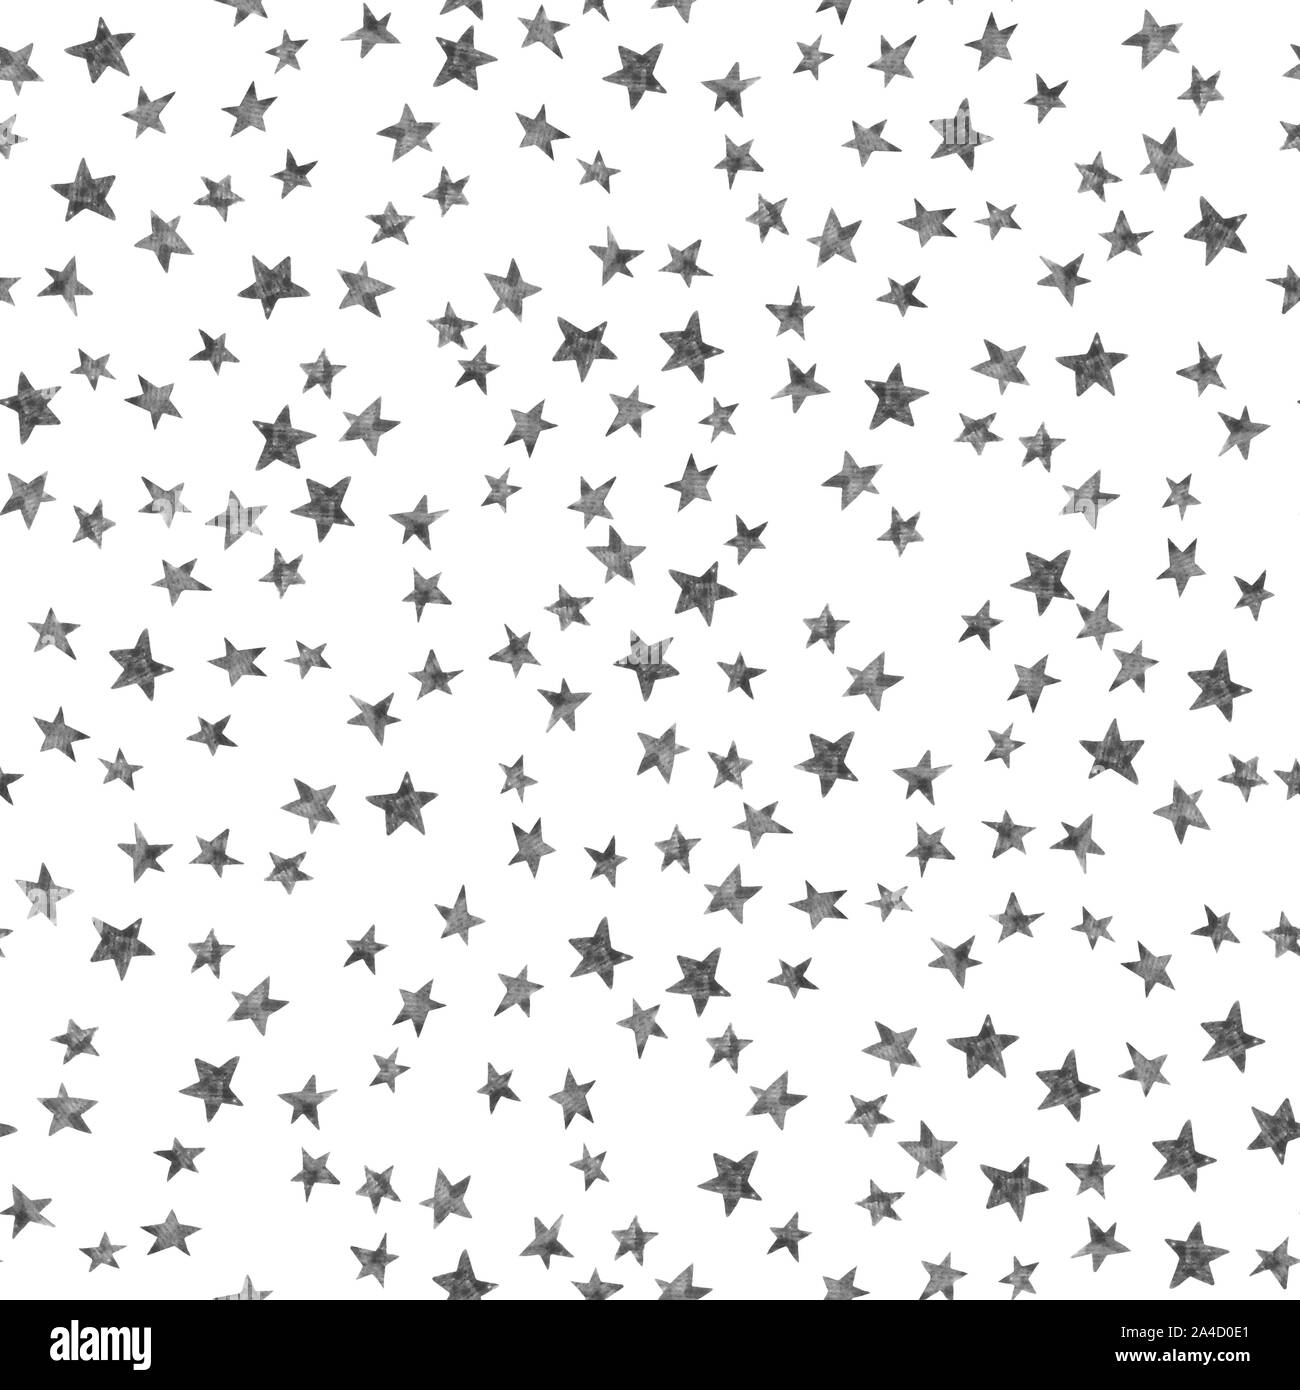 Cielo stellato seamless pattern con semplici stelle in bianco e nero su sfondo bianco. Acquerello doodle illustrazione. Colore dell'acqua star modello ripetitivo. Cons Foto Stock